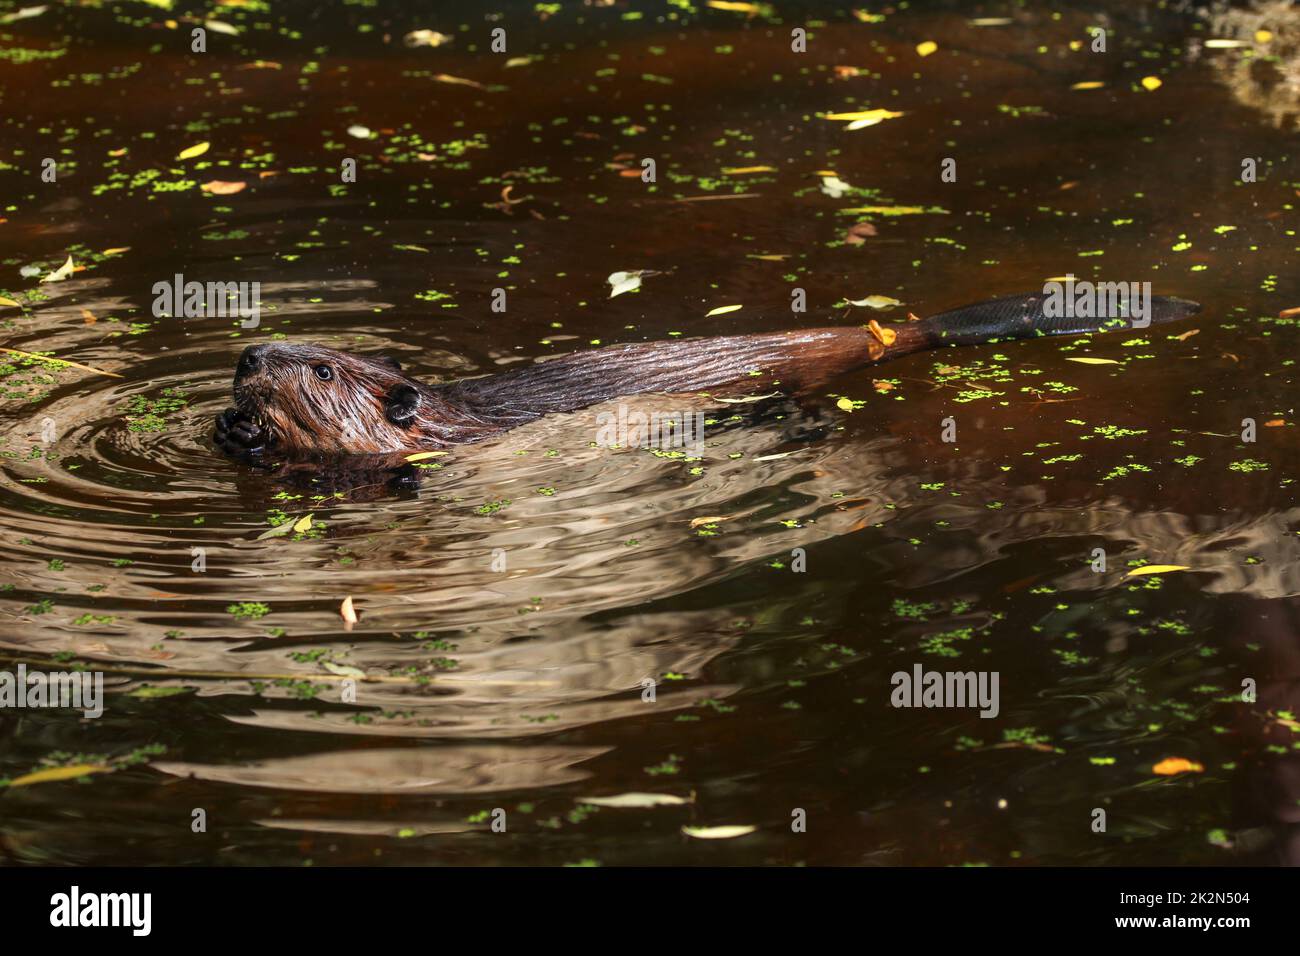 Le castor d'Eurasie (Castor fiber) Nager dans l'étang, petites feuilles vert et jaune foncé sur la surface de l'eau, seulement la tête, dans le dos et la queue visible. Banque D'Images